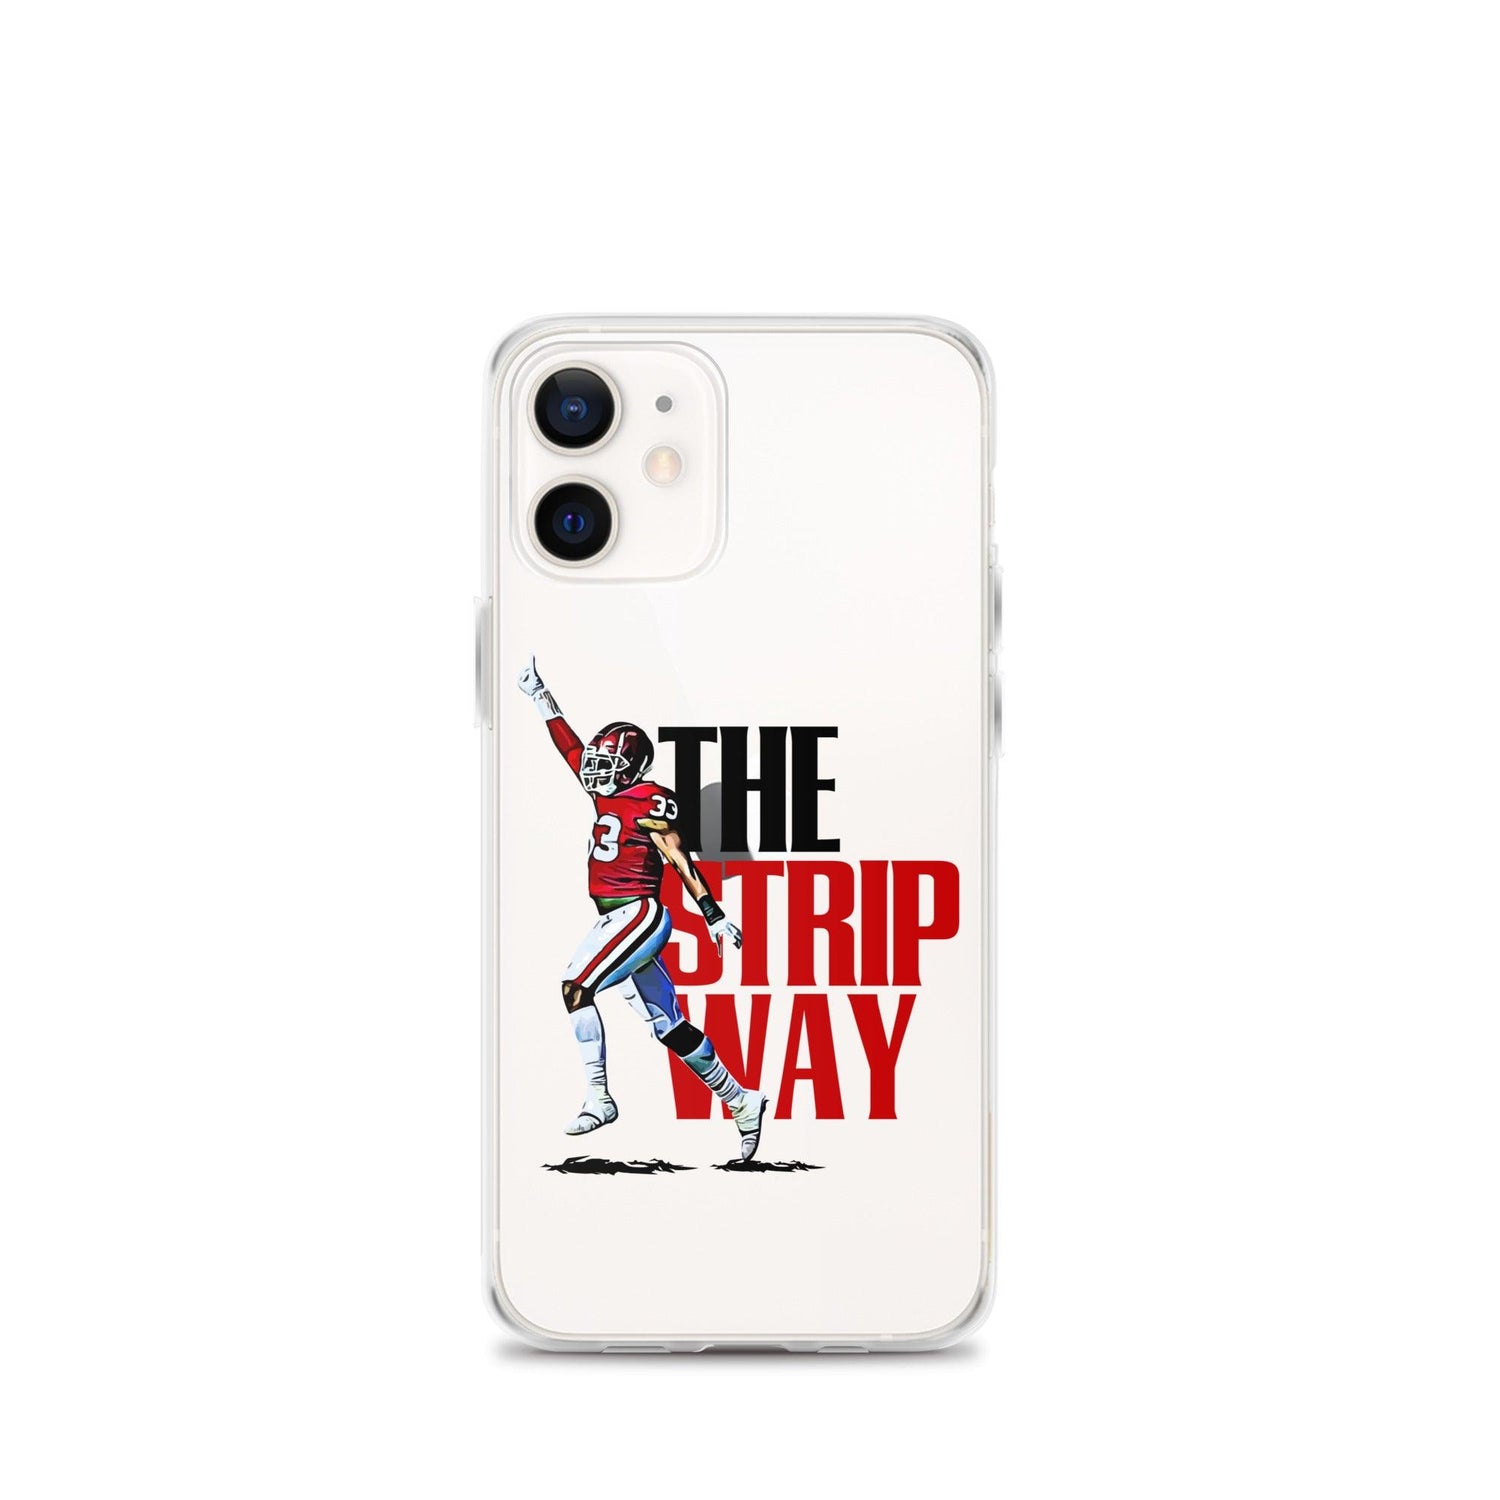 Marcus Stripling “TSW” iPhone Case - Fan Arch